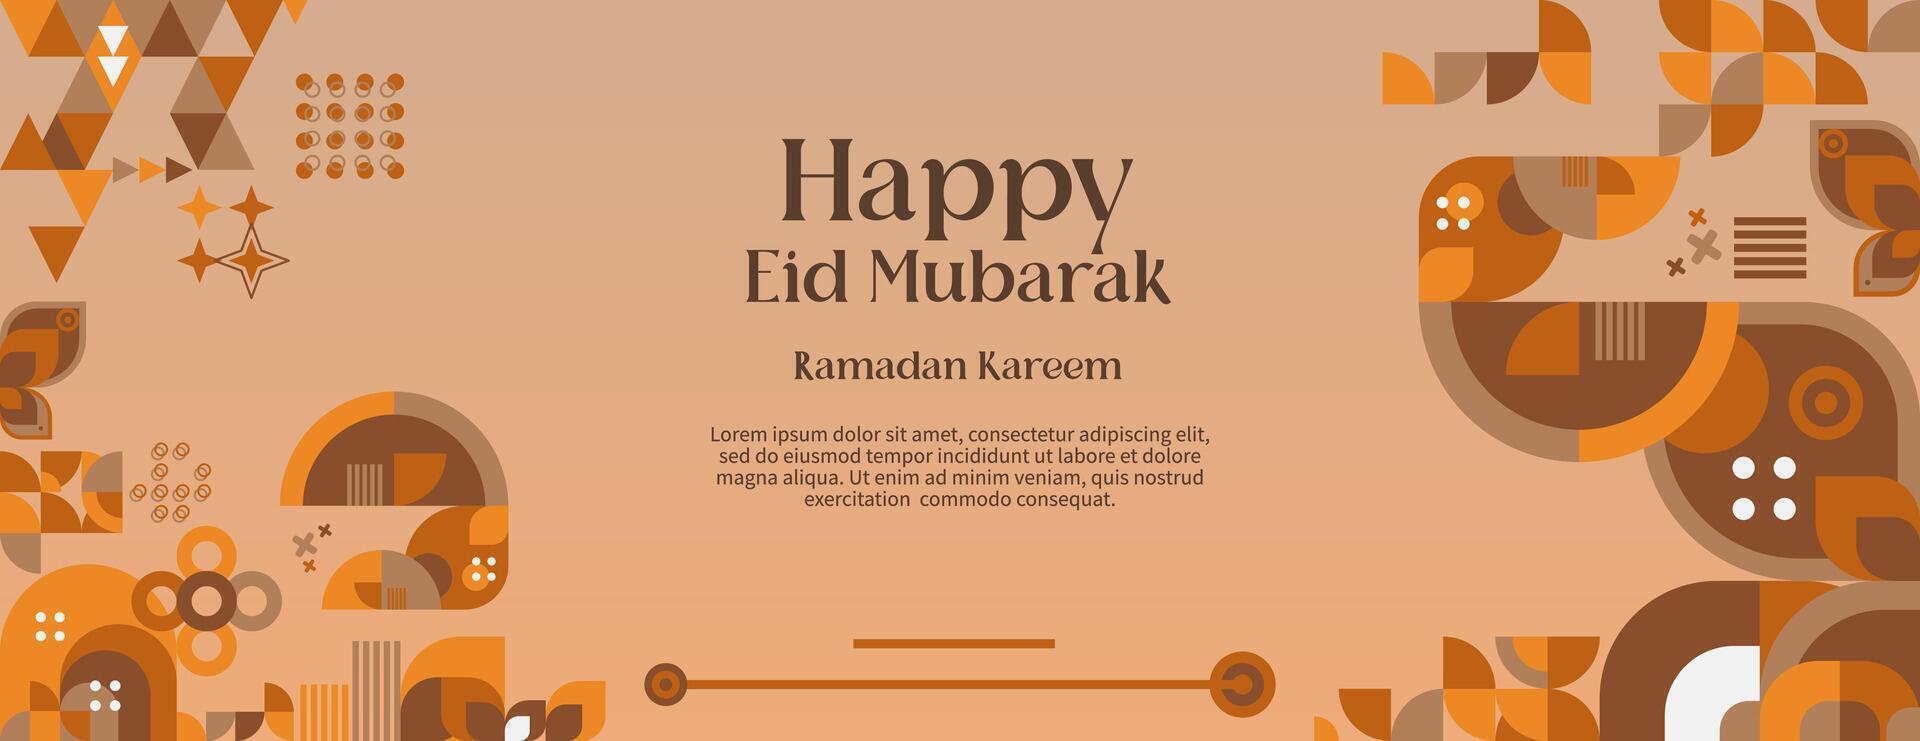 gelukkig eid mubarak banier met pastel kleuren in een modern meetkundig stijl. Islamitisch groet kaart Hoes gelukkig eid al-fitr of eid mubarak met typografie. vector illustratie voor Ramadan viering